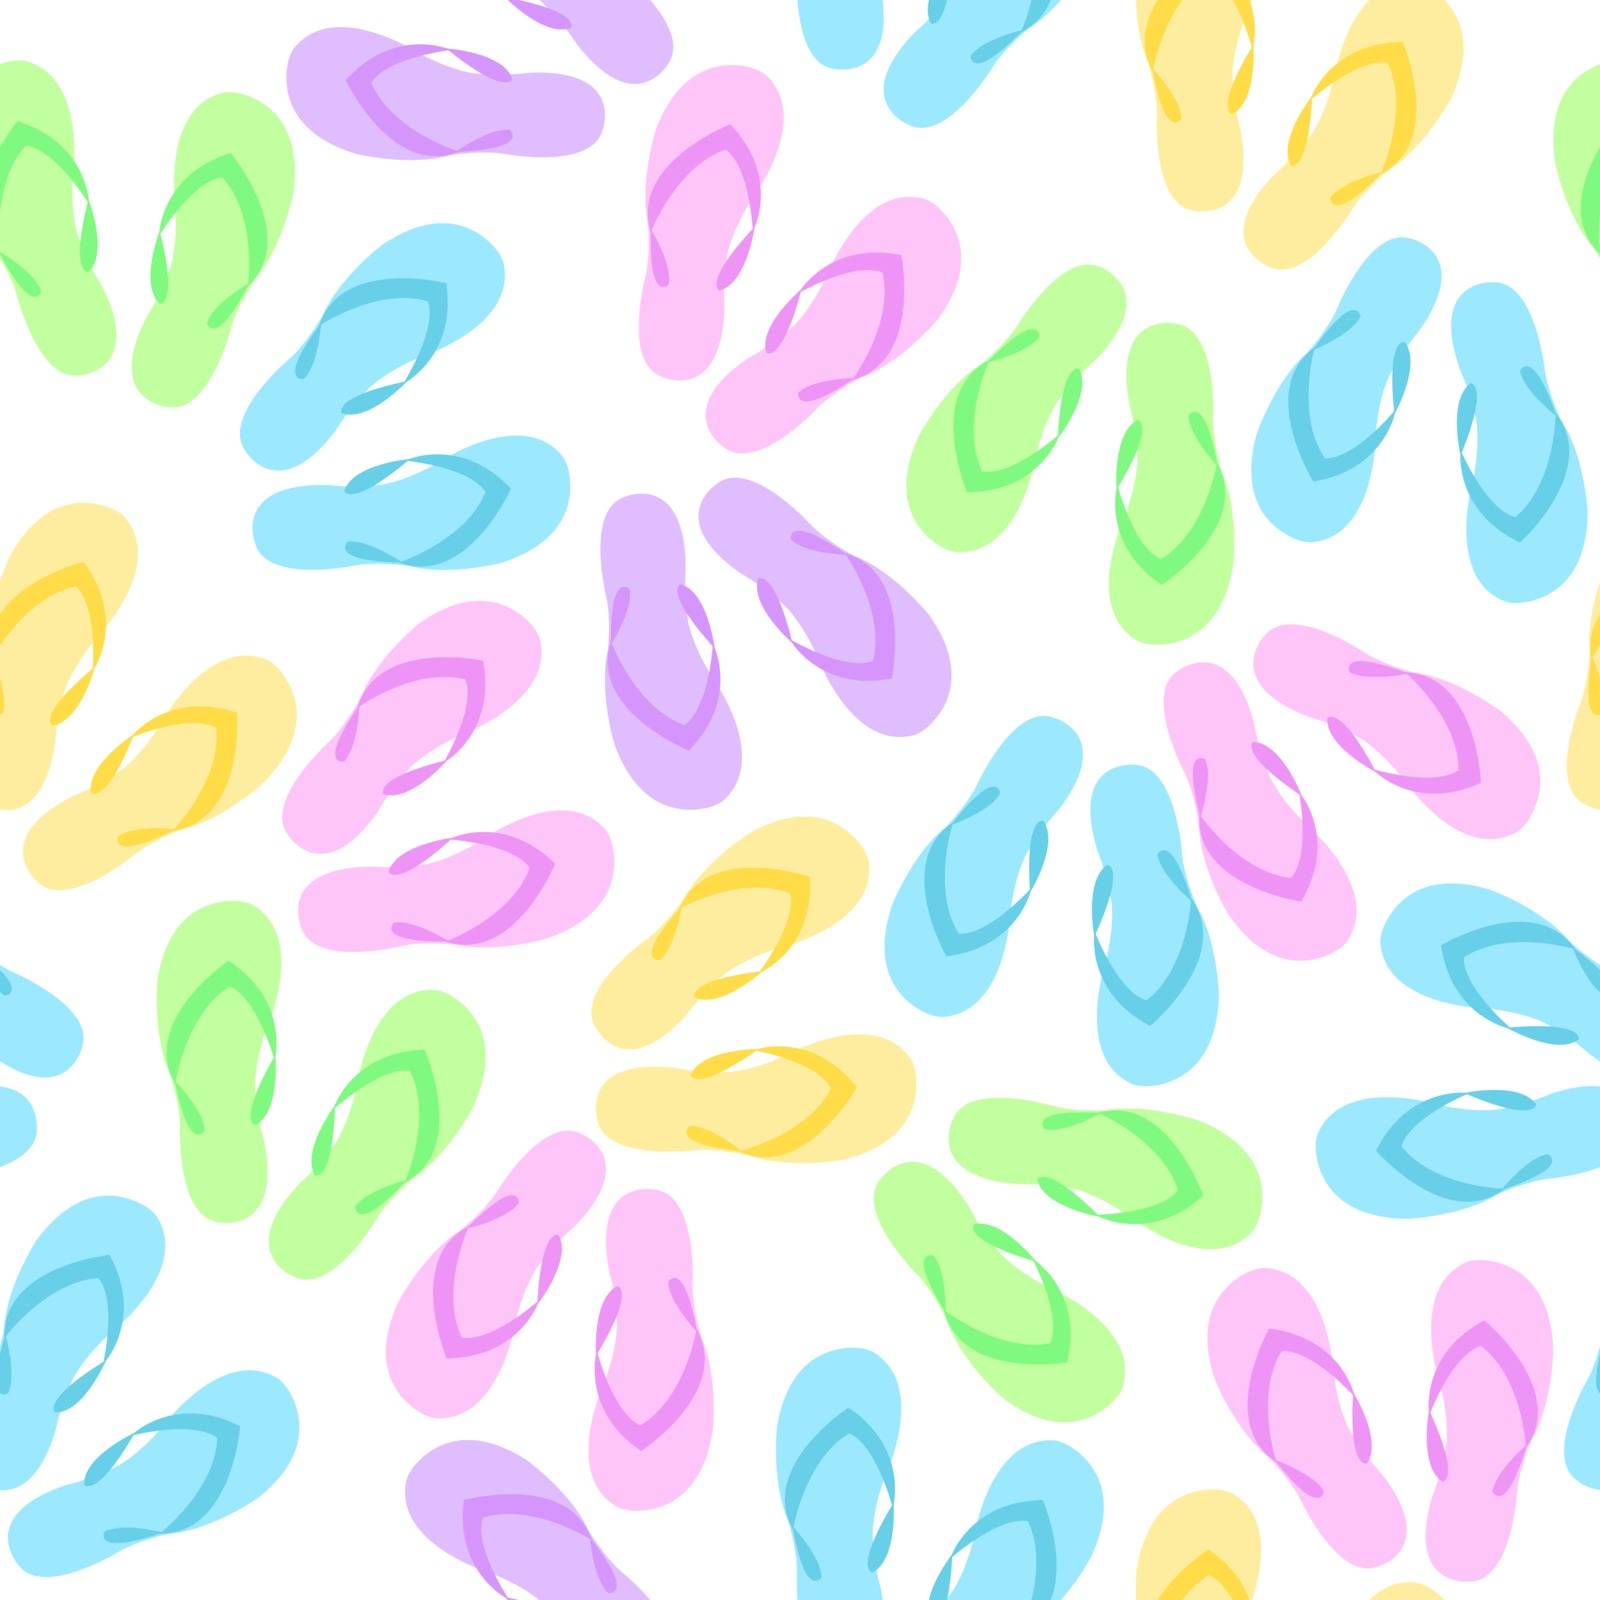 Flip Flops seamless texture, beach background. Summer texture vector illustration